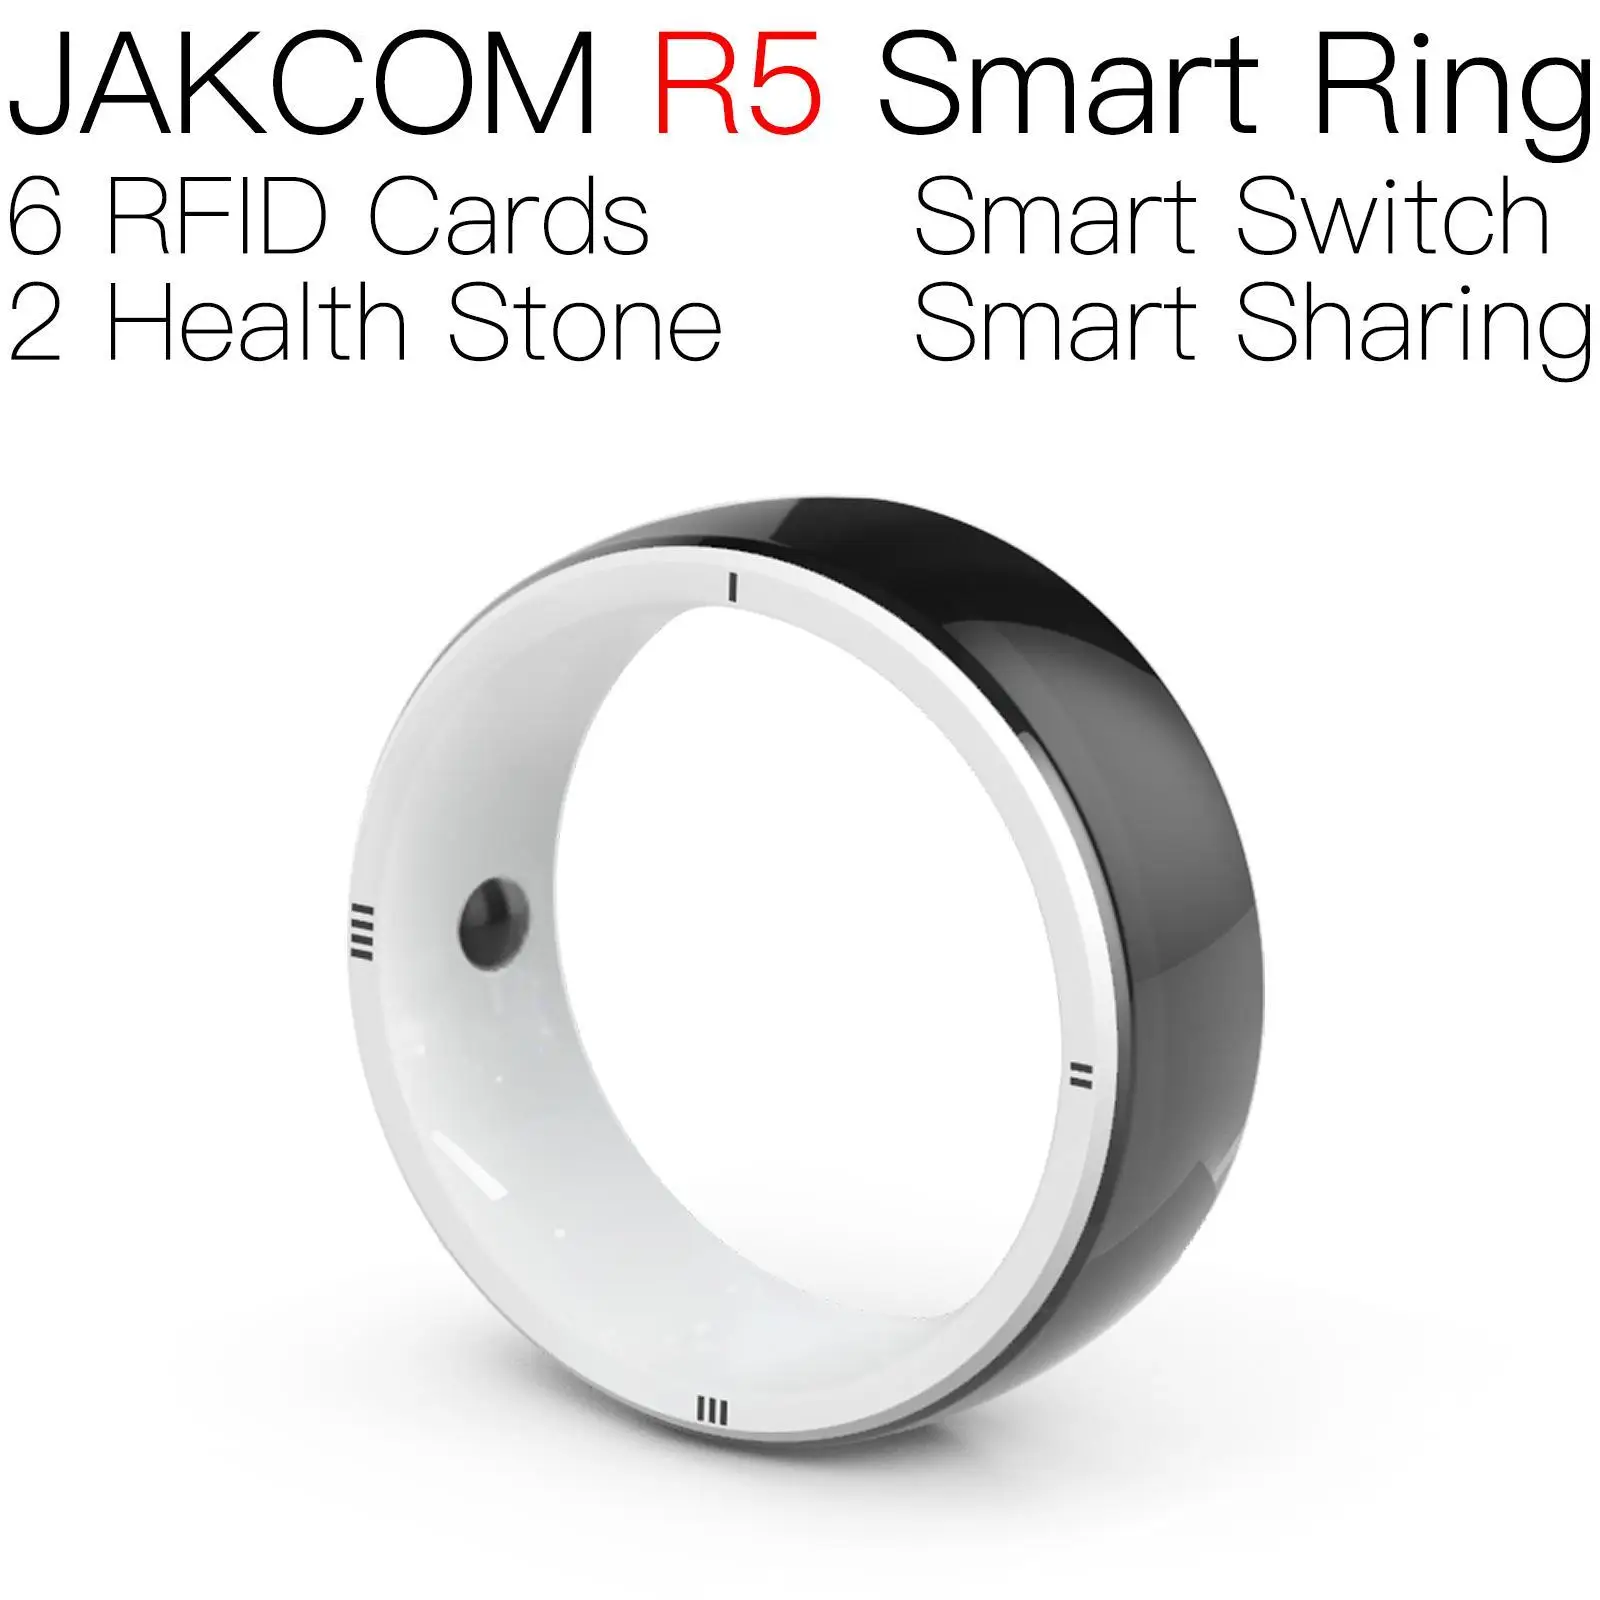 JAKCOM R5 смарт-кольцо Новое поступление в виде rfid-метки МГц ПВХ карта белый кот nfc eeprom копия 900 МГц 18650 чехол для аккумулятора водонепроницаемый jordan